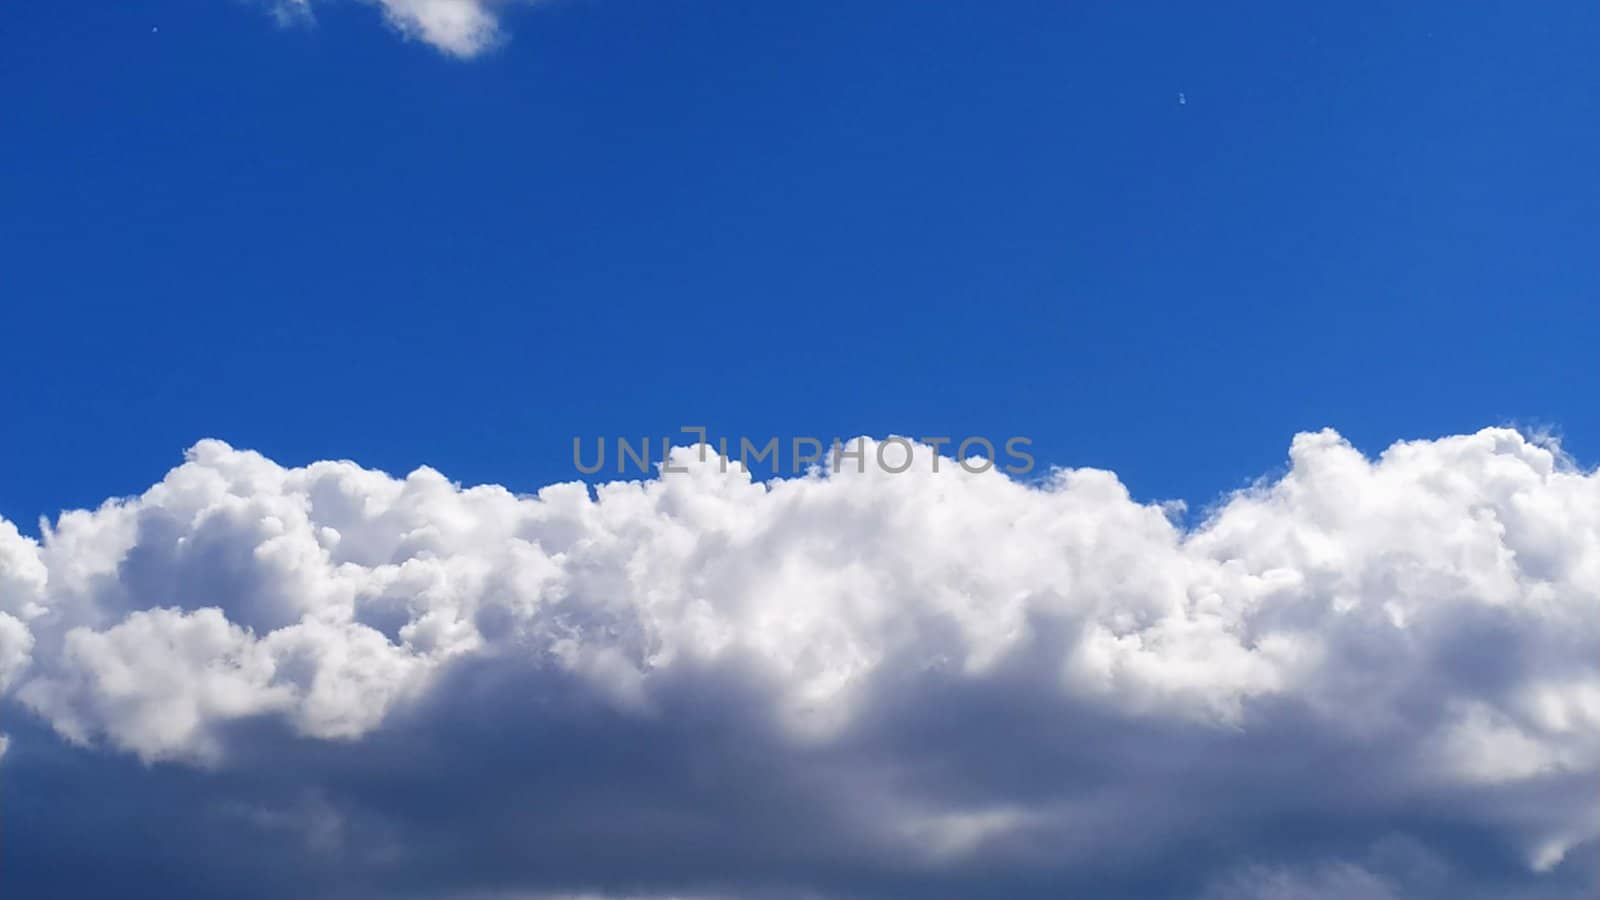 White cumulus clouds against a blue sky.